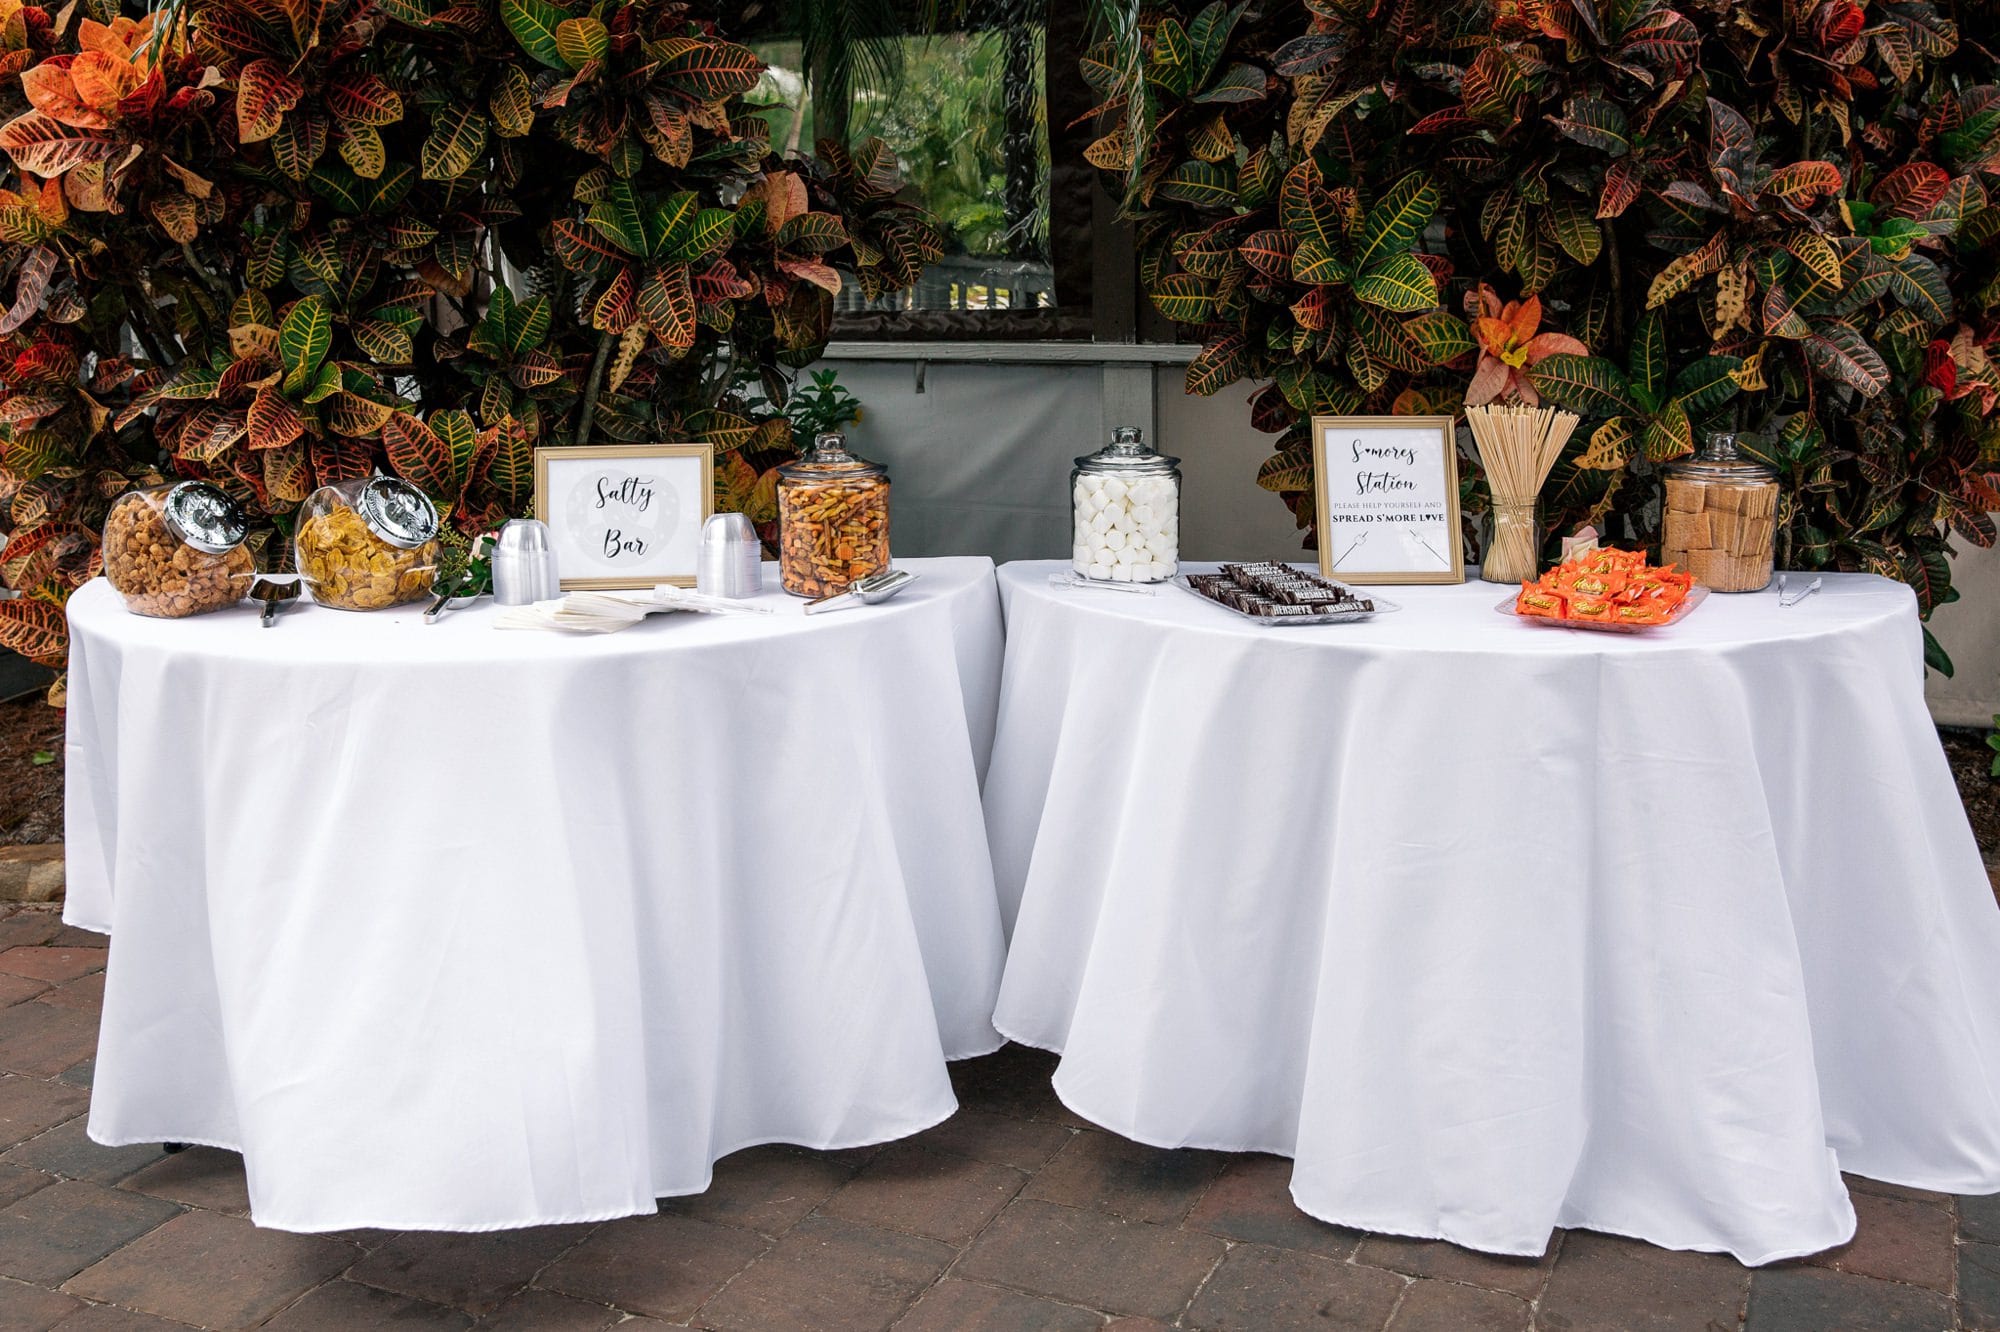 Wedding reception snack table